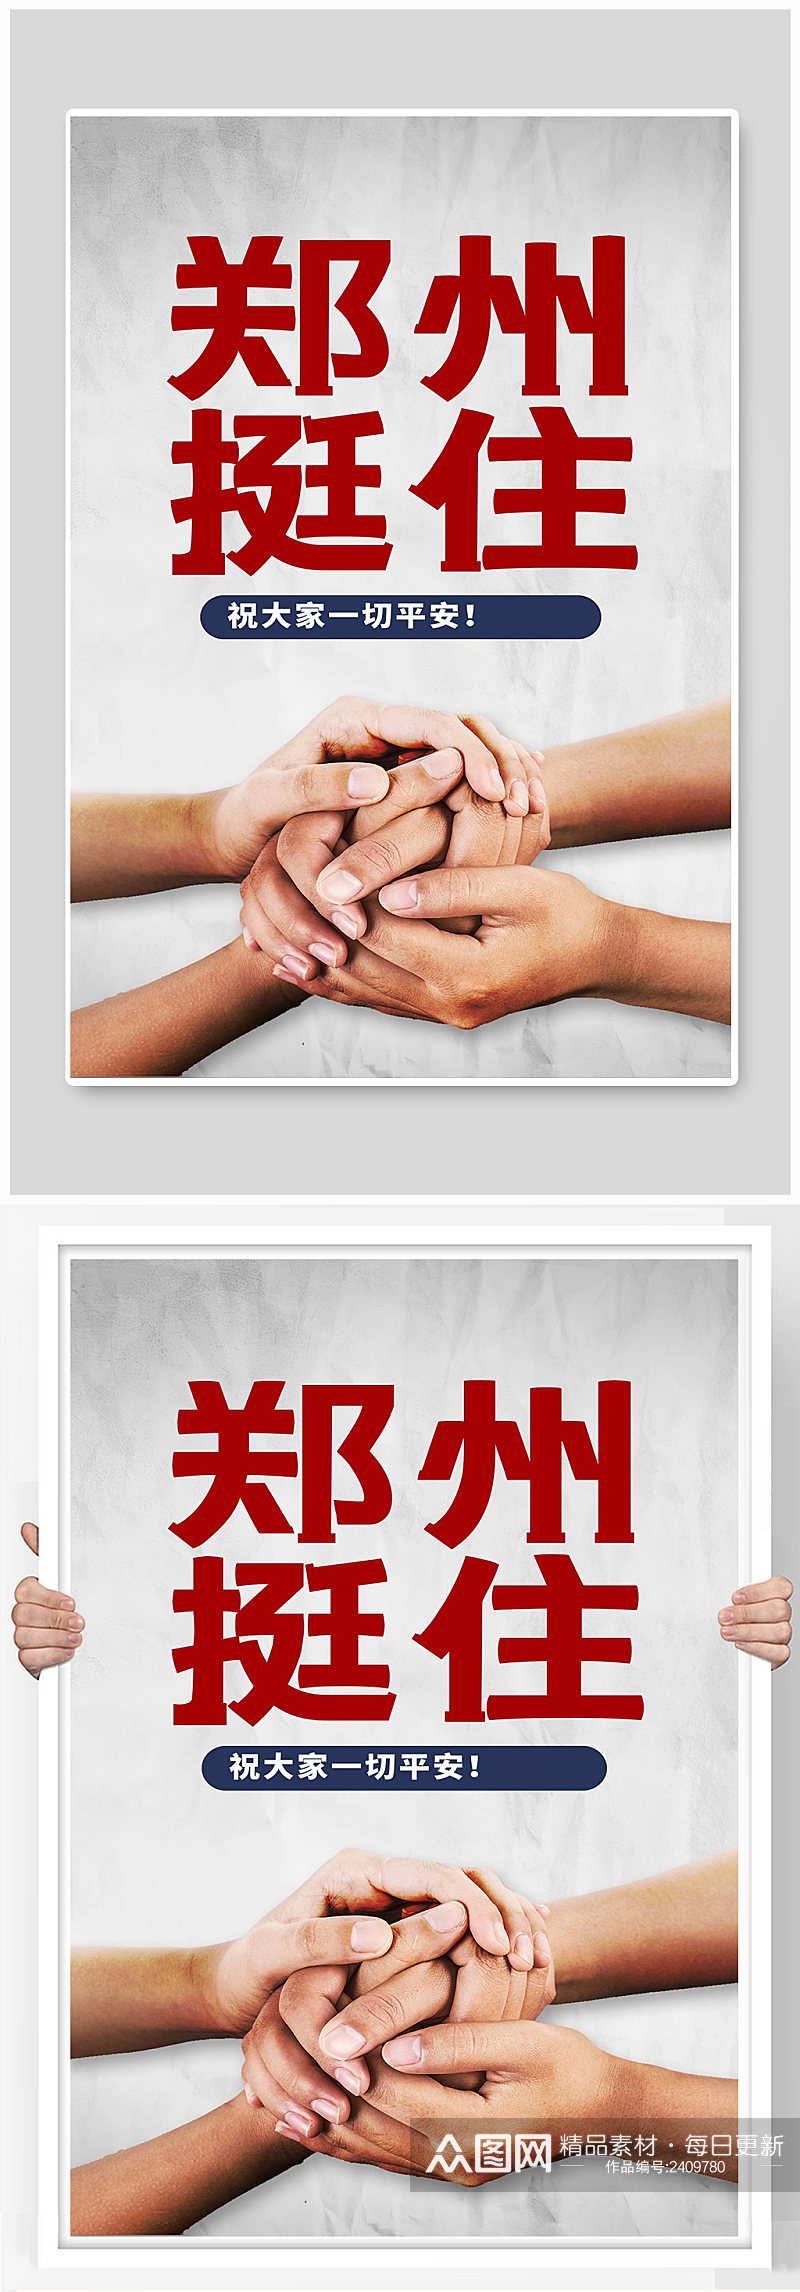 郑州挺住宣传海报设计素材